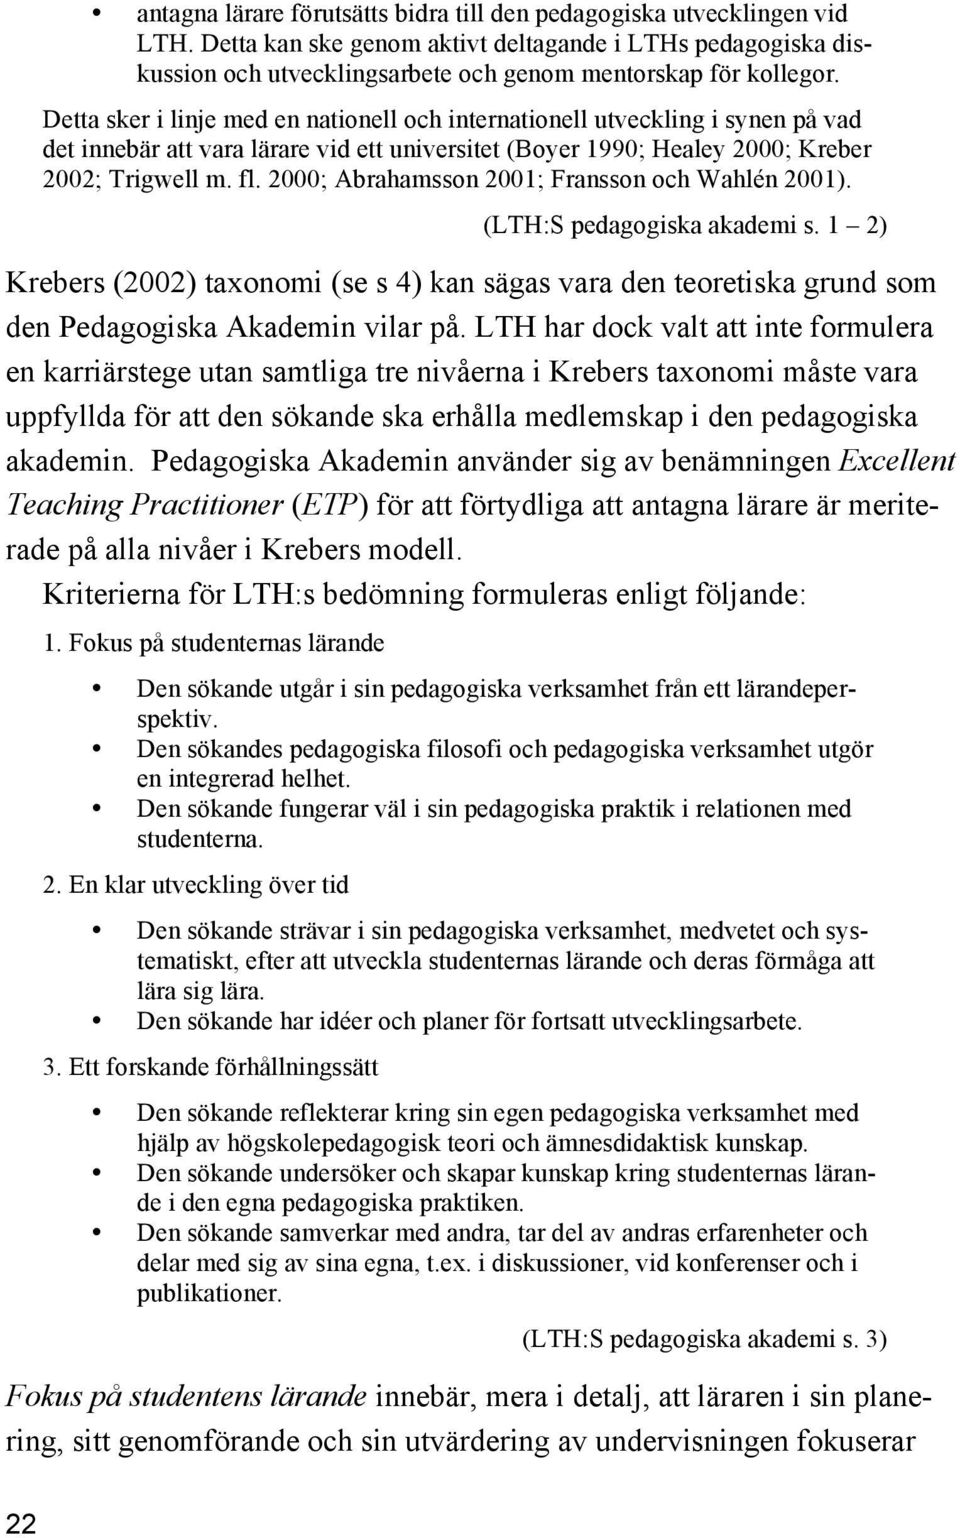 2000; Abrahamsson 2001; Fransson och Wahlén 2001). (LTH:S pedagogiska akademi s. 1 2) Krebers (2002) taxonomi (se s 4) kan sägas vara den teoretiska grund som den Pedagogiska Akademin vilar på.